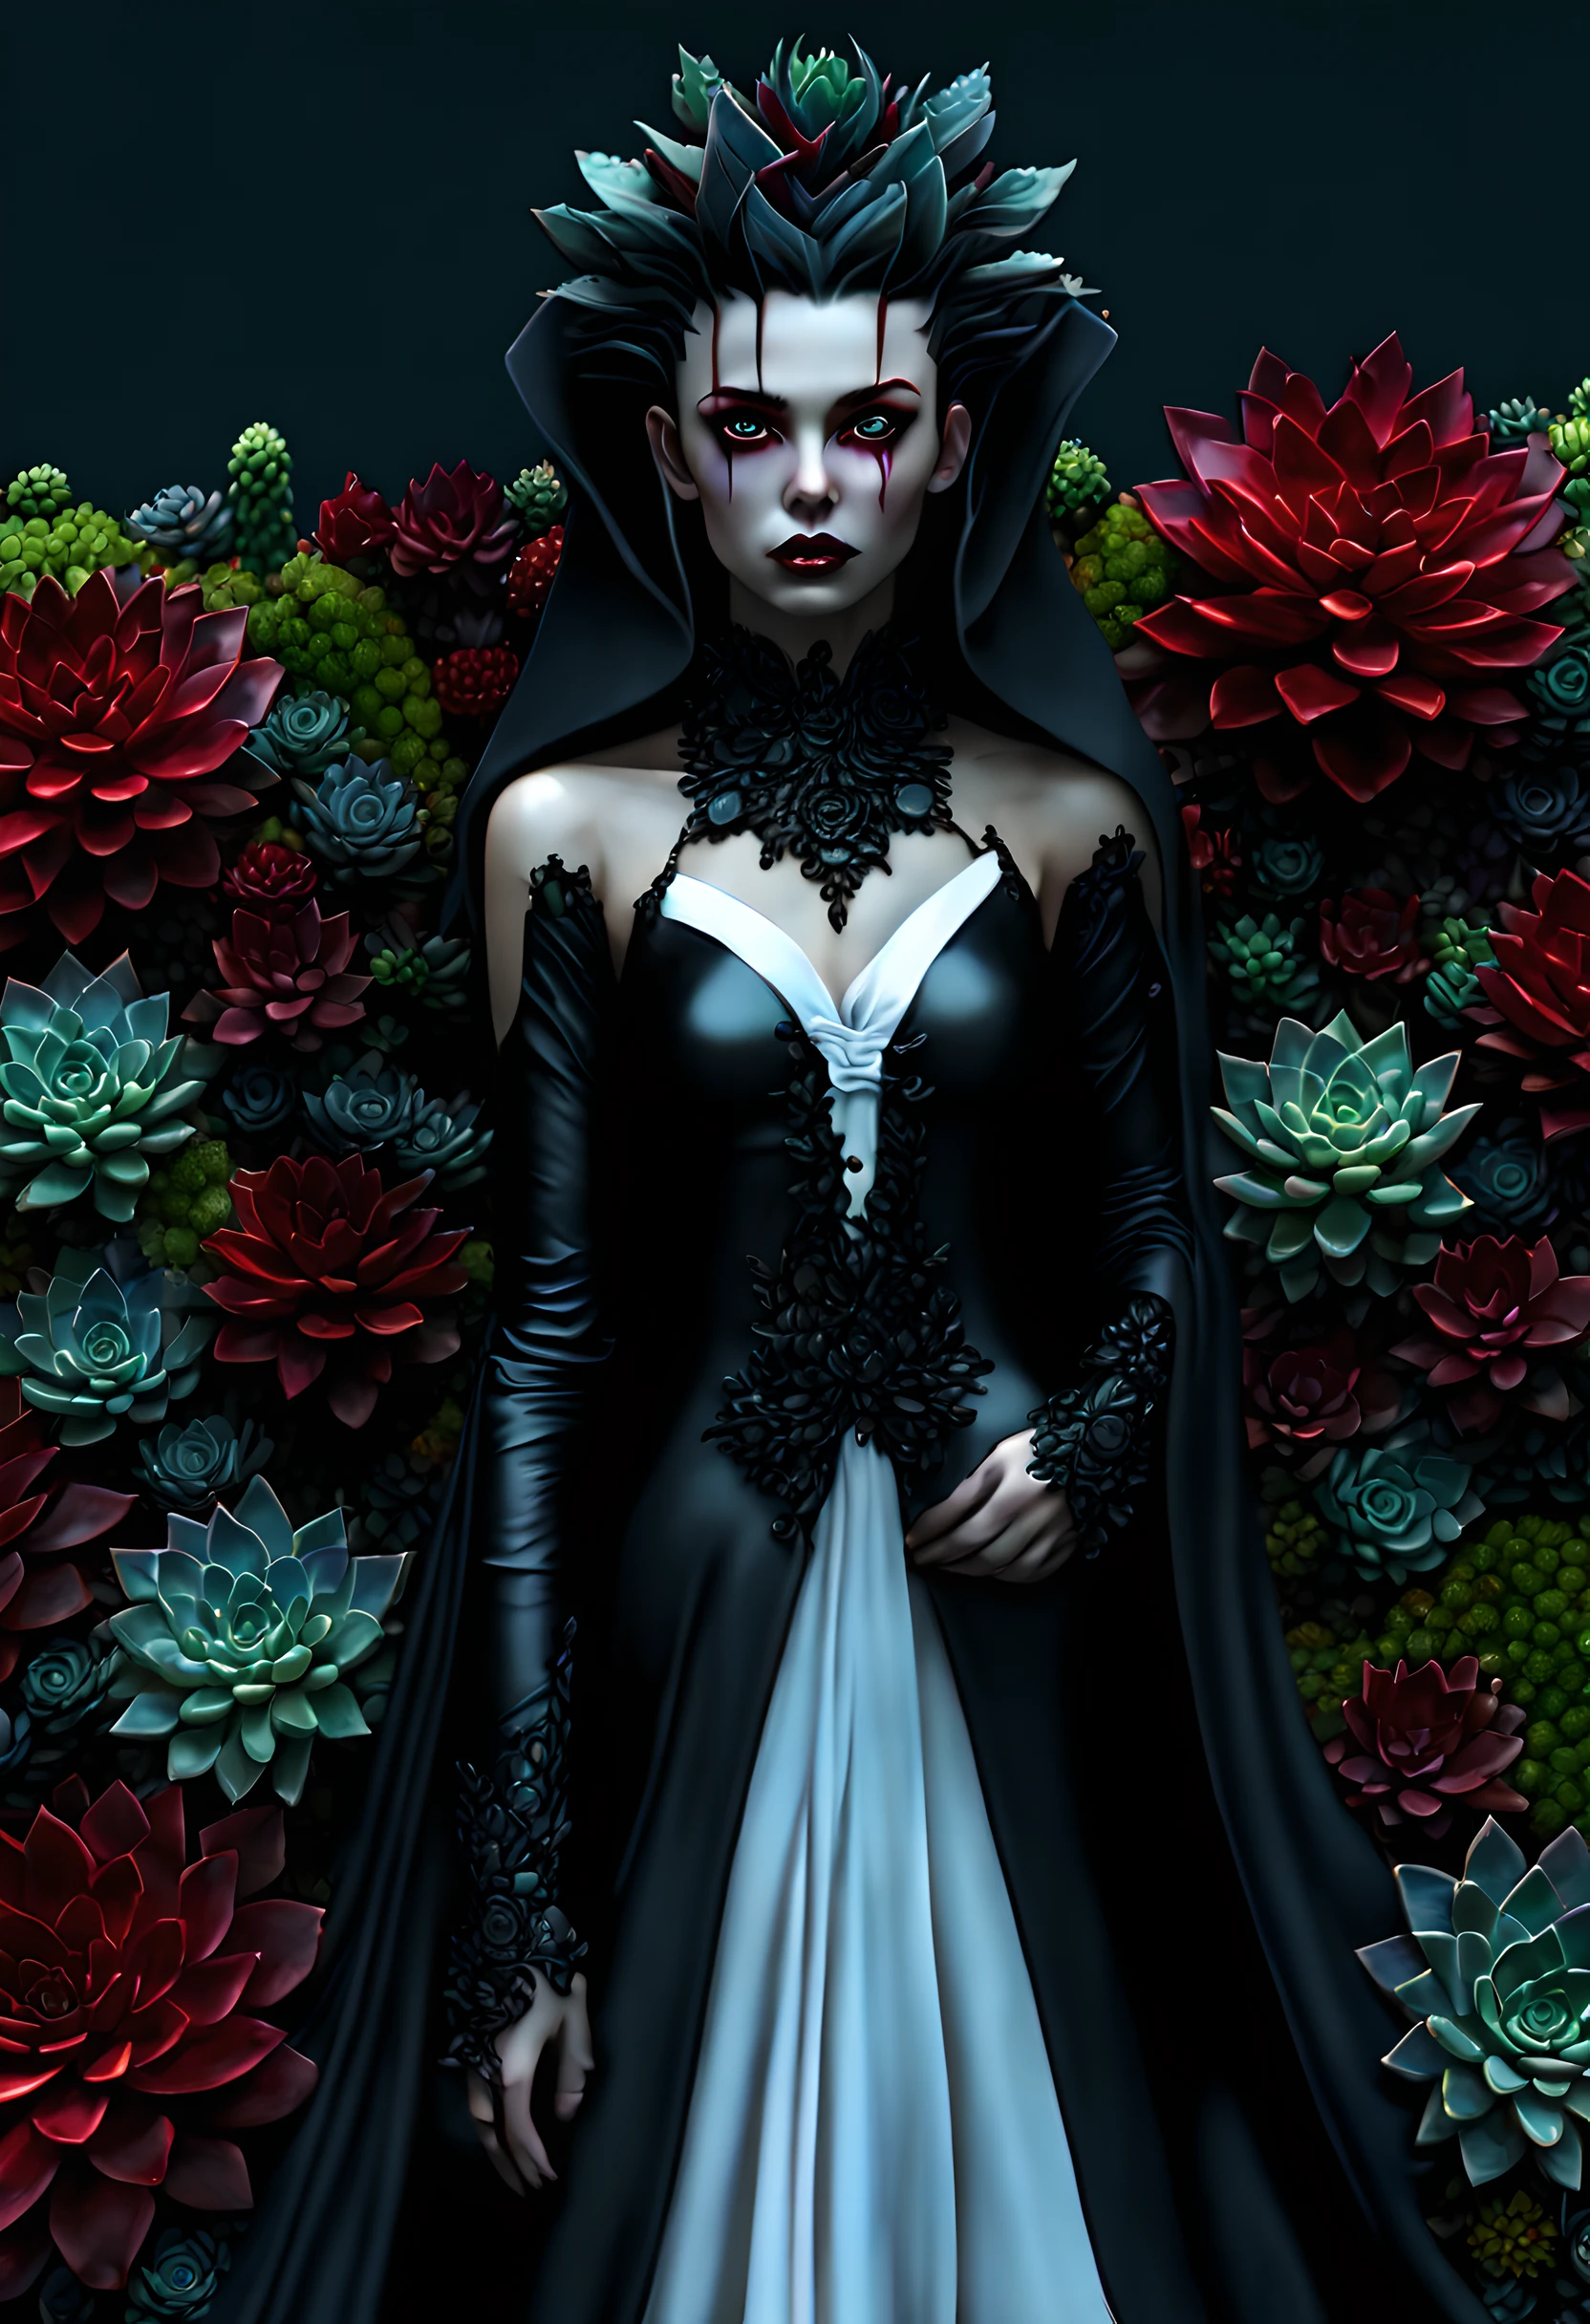 picture of a vampire woman พักผ่อนใน a (สีดำ:1.2) และ (สีแดง:1.2) coloสีแดง succulents meadow, เต็มตัว, สวยงามประณีต (ละเอียดมาก, ผลงานชิ้นเอก, คุณภาพดีที่สุด: 1.4) หญิงแวมไพร์หญิง, มุมไดนามิก (รายละเอียดดีที่สุด, ผลงานชิ้นเอก, คุณภาพดีที่สุด), ละเอียดมาก face (ละเอียดมาก, ผลงานชิ้นเอก, คุณภาพดีที่สุด), เป็นผู้หญิงเป็นพิเศษ, ผิวสีเทา, ผมบลอนด์, ผมหยัก, สีดวงตาแบบไดนามิก, ดวงตาเย็นชา, ดวงตาที่เร่าร้อน, ดวงตาที่รุนแรง, dark สีแดง lips, [เขี้ยว], สวมชุดสีขาว, ชุดเดรสสไตล์หรูหรา (ละเอียดมาก, ผลงานชิ้นเอก, คุณภาพดีที่สุด), สวมเสื้อคลุมสีน้ำเงิน (ละเอียดมาก, ผลงานชิ้นเอก, คุณภาพดีที่สุด), เสื้อคลุมยาว, เสื้อคลุมไหล (ละเอียดมาก, ผลงานชิ้นเอก, คุณภาพดีที่สุด), สวมรองเท้าส้นสูง, พักผ่อนใน (สีดำ และ สีแดง coloสีแดง succulents meadow: 1.6), ฉ่ำหยดเลือด, full coloสีแดง, (สเปกตรัมที่สมบูรณ์แบบ: 1.3),( งานที่มีชีวิตชีวา: 1.4) vibrant shades of สีแดง, และ สีดำ) พระจันทร์ขึ้น, แสงจันทร์, เวลากลางคืน, รายละเอียดสูง, ศิลปะแฟนตาซี, RPG art คุณภาพดีที่สุด, 16k, [ละเอียดมาก], ผลงานชิ้นเอก, คุณภาพดีที่สุด, (ละเอียดมาก), เต็มตัว, ถ่ายภาพมุมกว้างพิเศษ, เหมือนจริง, สงครามกิลด์